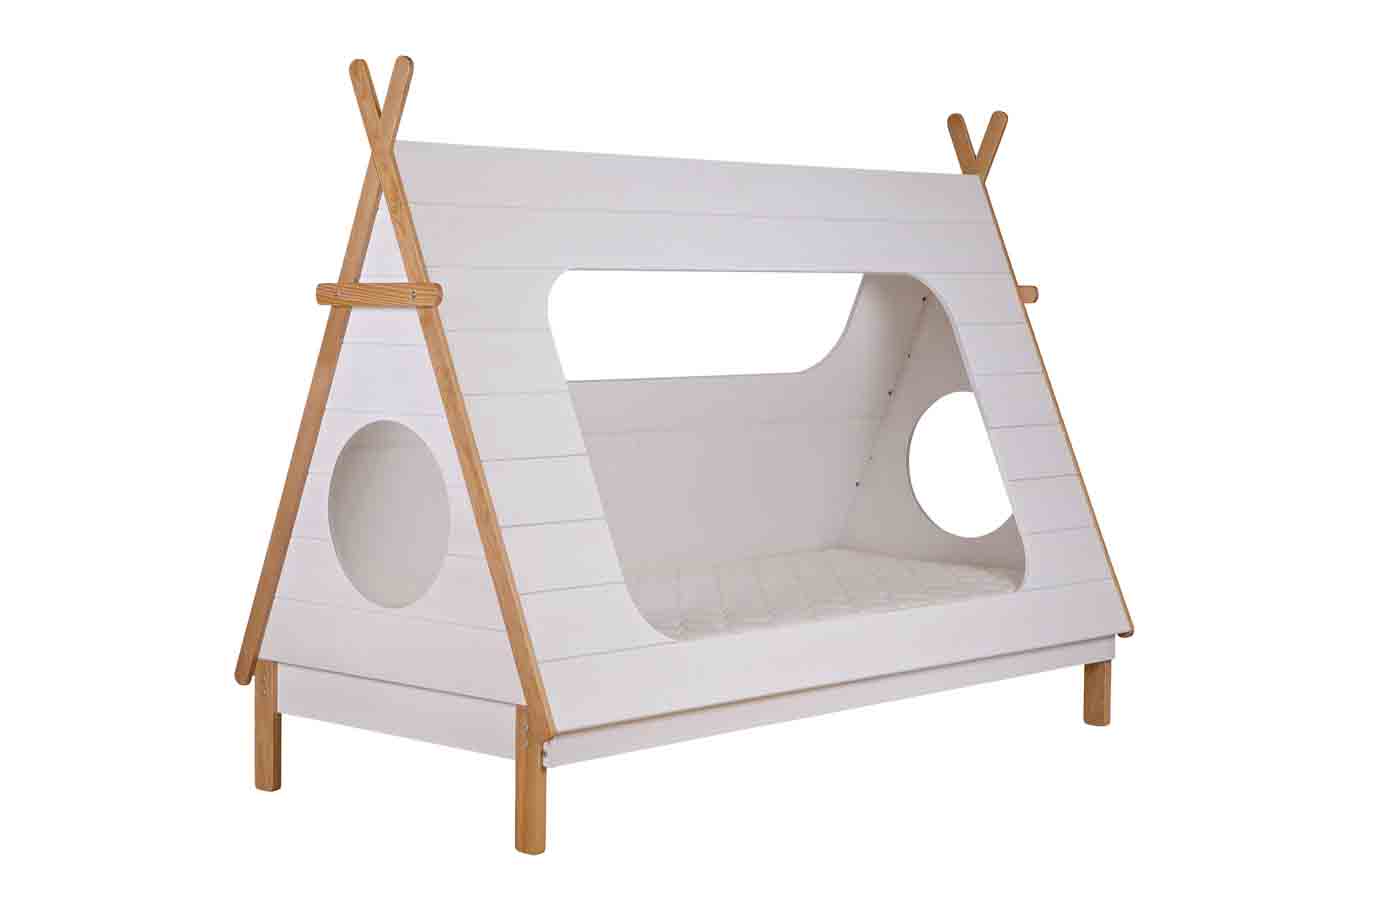 Kinderbett Tipi mit Dach zum verstecken inkl. Lattenrost 200x90cm. Süße Träume für die Kleinen